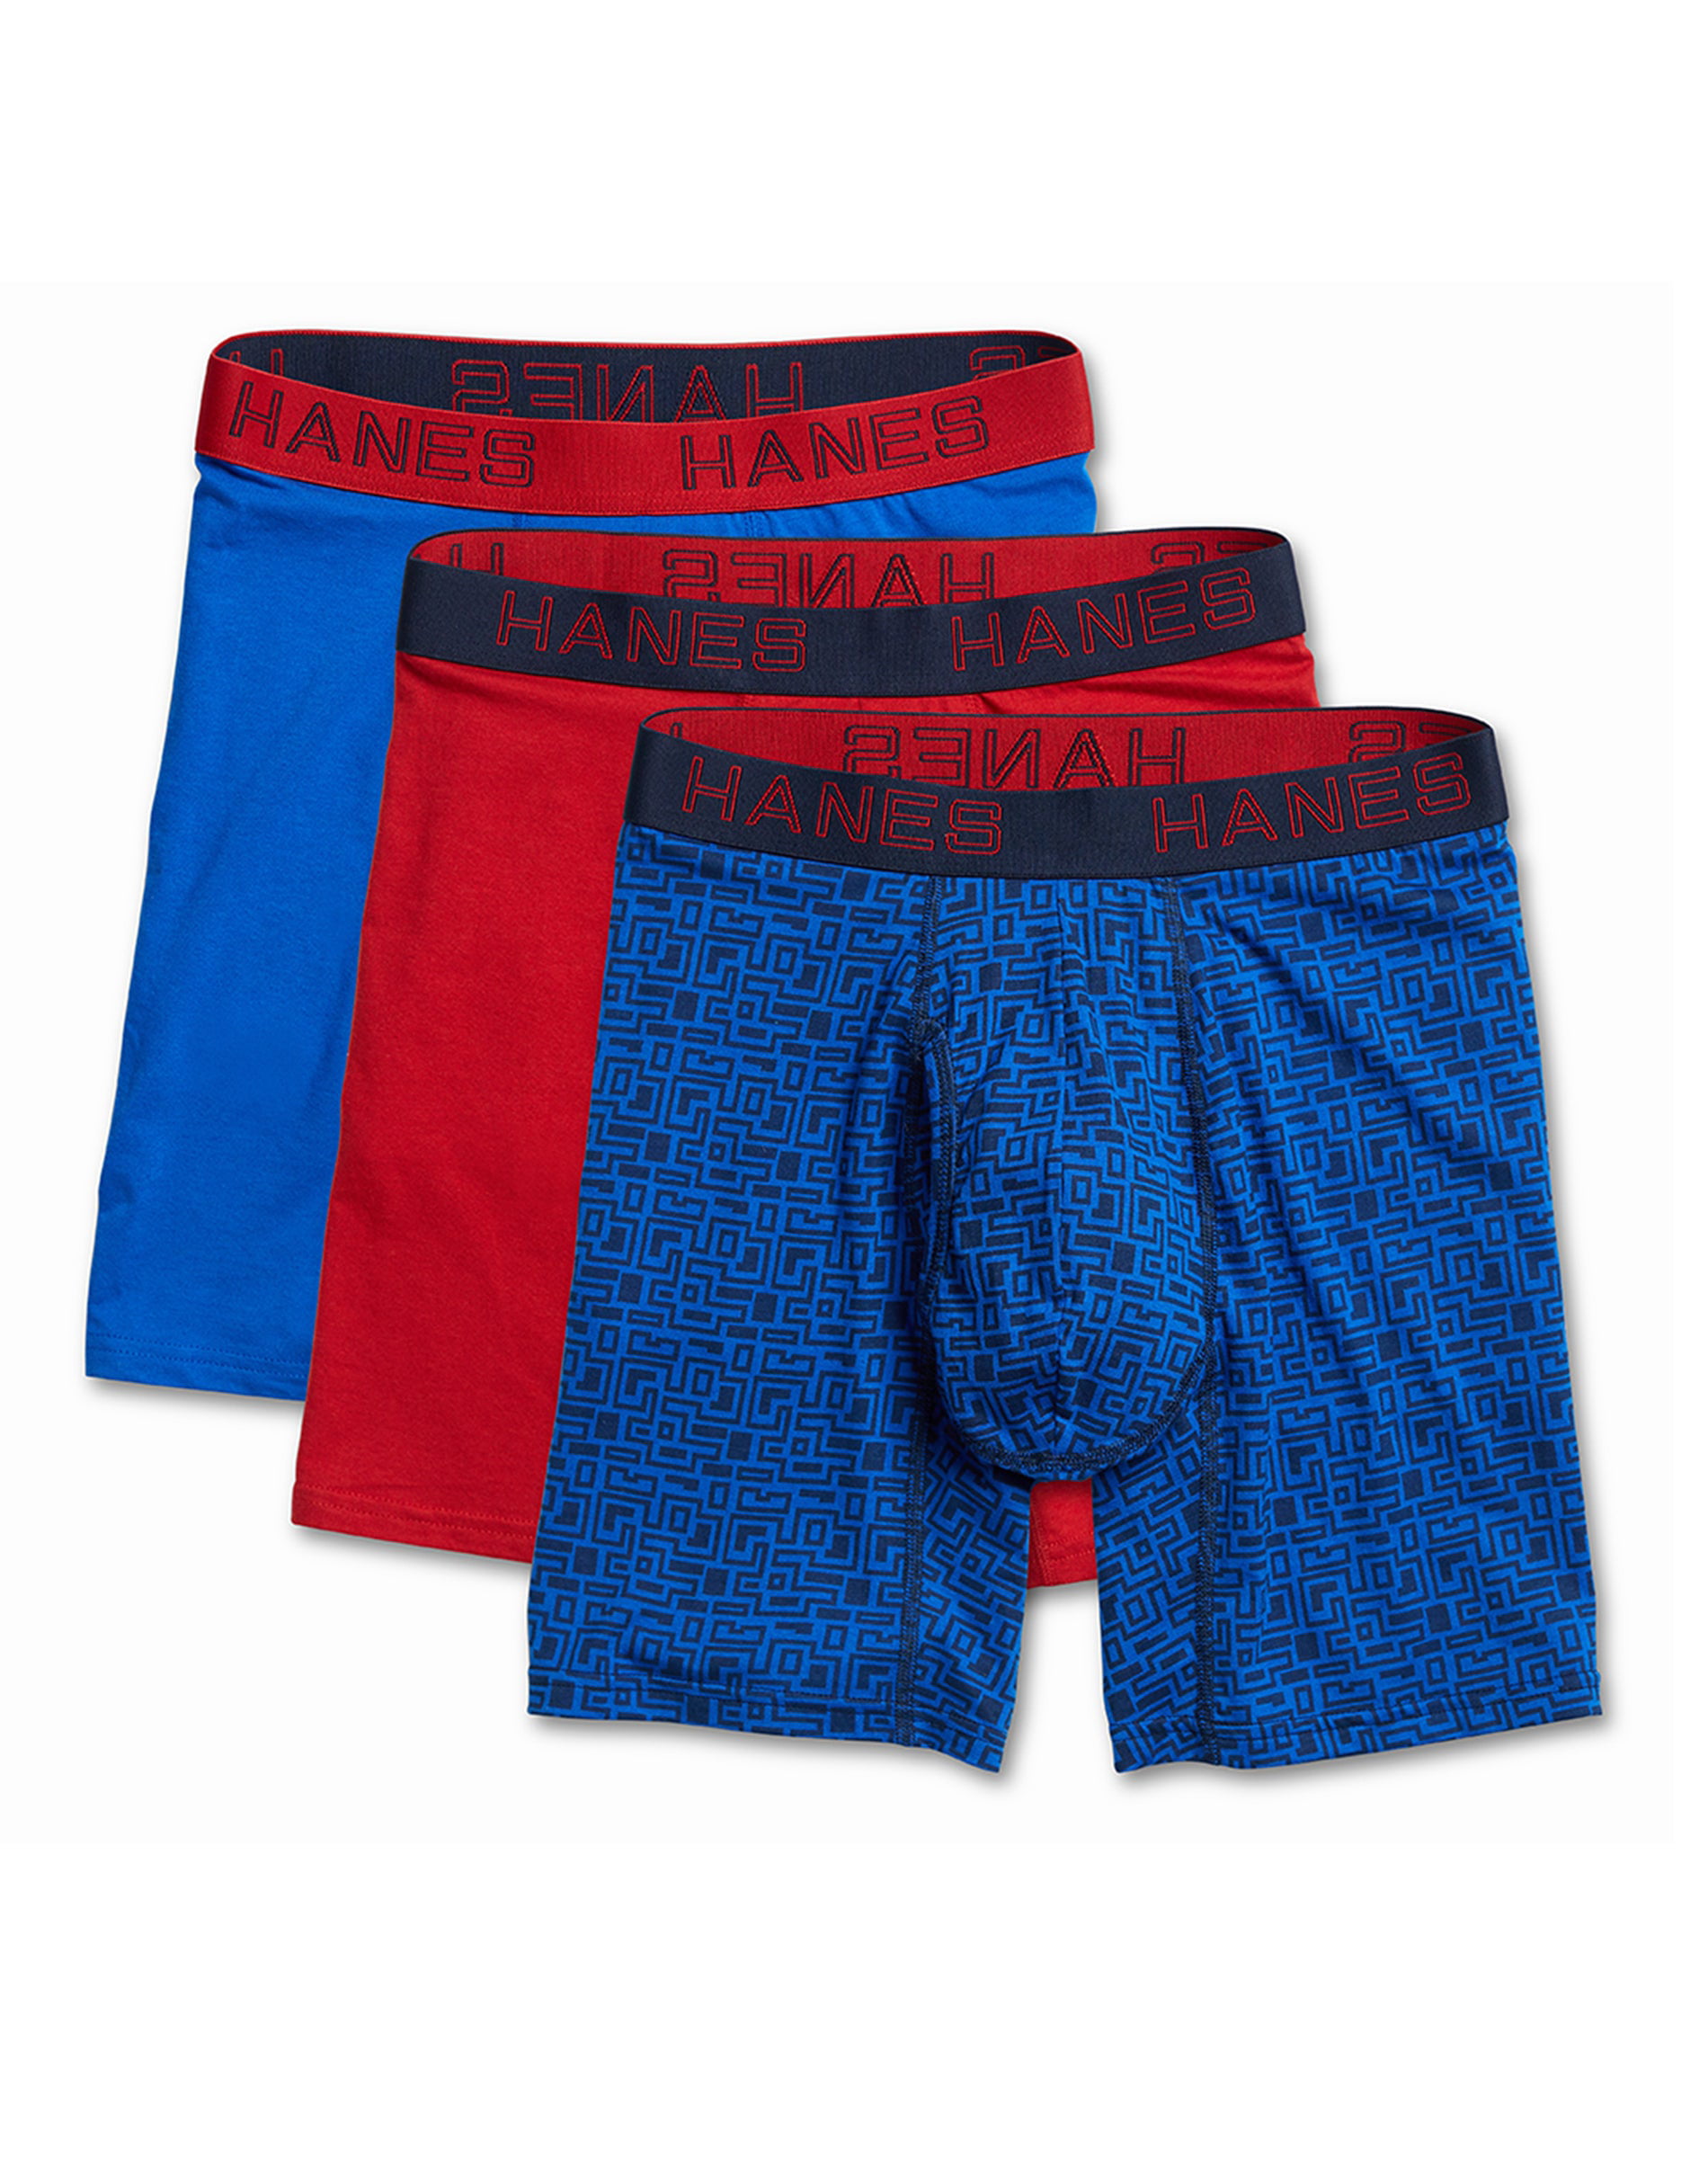 Details about   Hanes Boxer Briefs 3-PACK Ultimate Comfort Flex Fit Cotton/Modal Assorted Design 